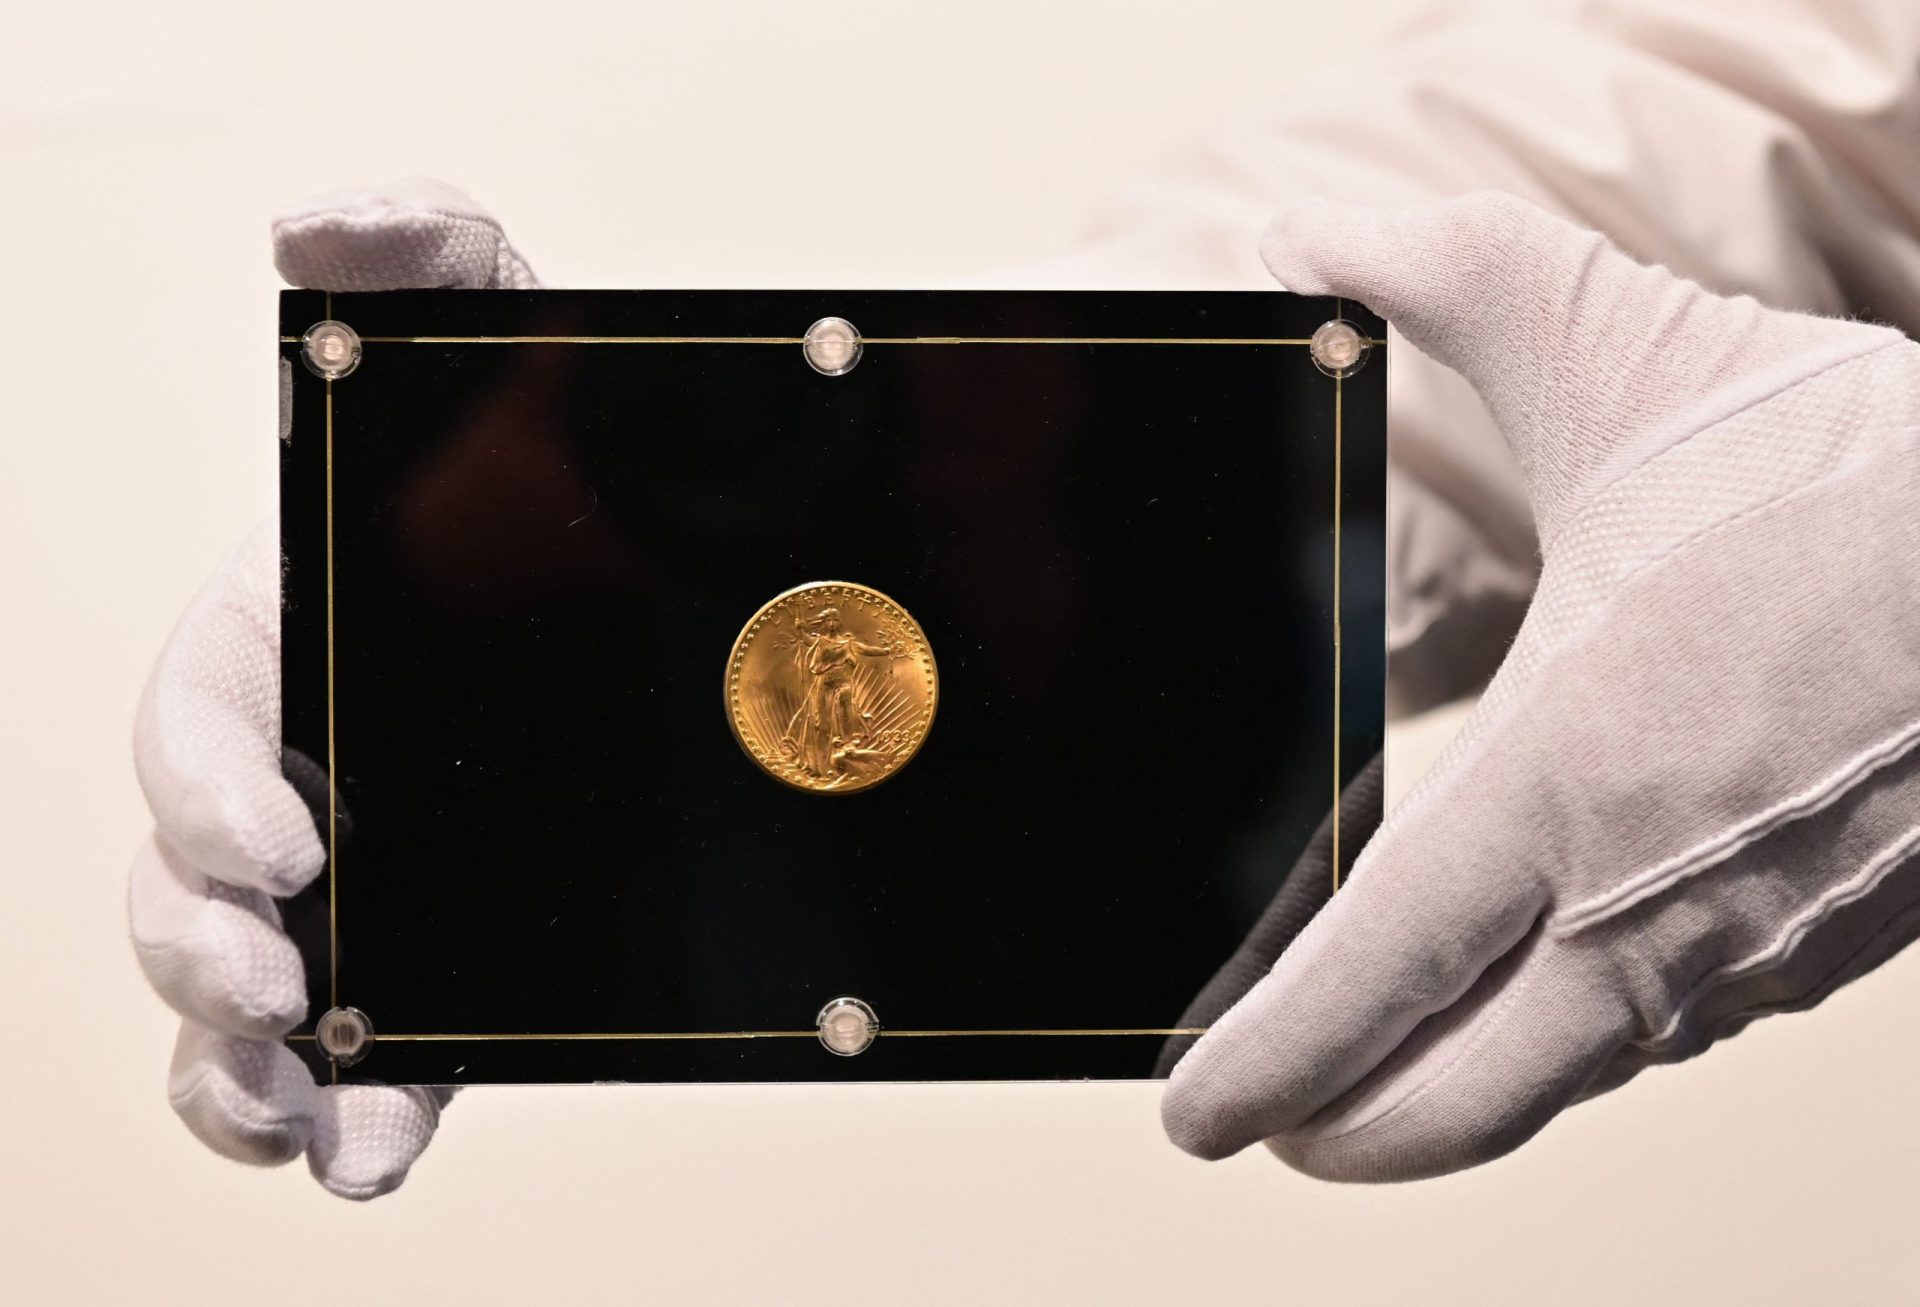 Uma moeda de ouro de 1933 torna-se a mais cara do mundo ao ser vendida por 15,5 milhões de euros